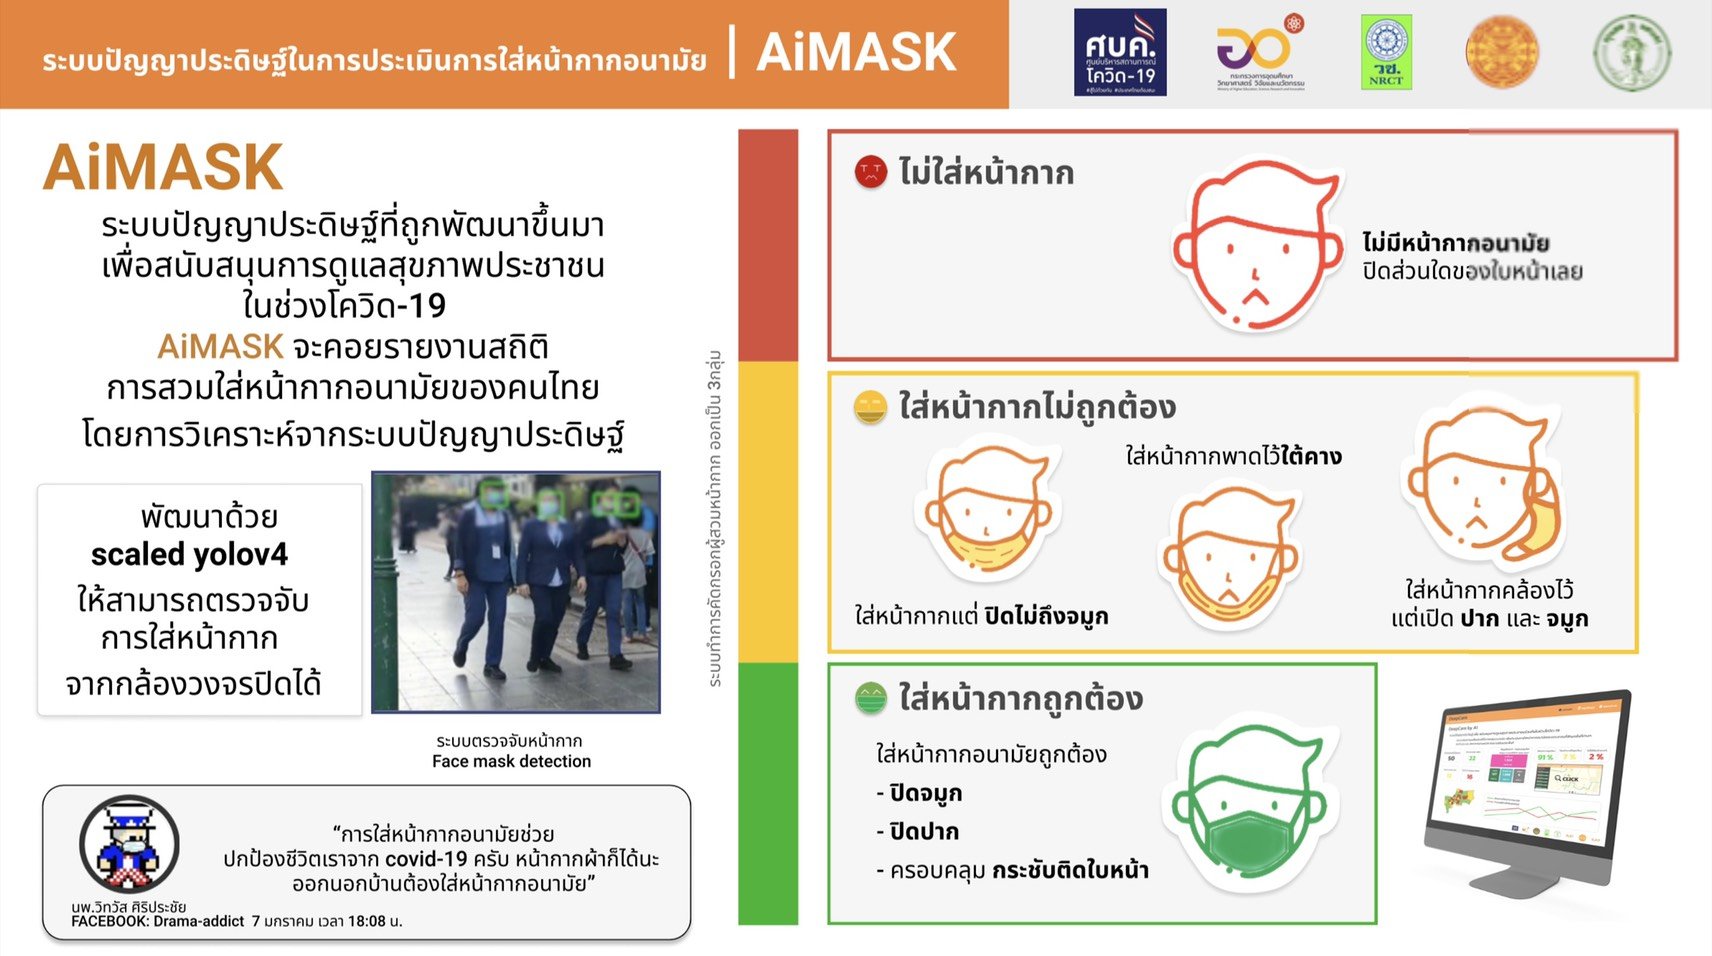  อว. เผยคนไทยร่วมมือป้องกันโควิด คนกรุงใส่หน้ากากอนามัยเพิ่มขึ้นเป็น 98.07% หลังผ่อนคลายมาตรการ การ์ดยังสูงทั้งเช้าและเย็น